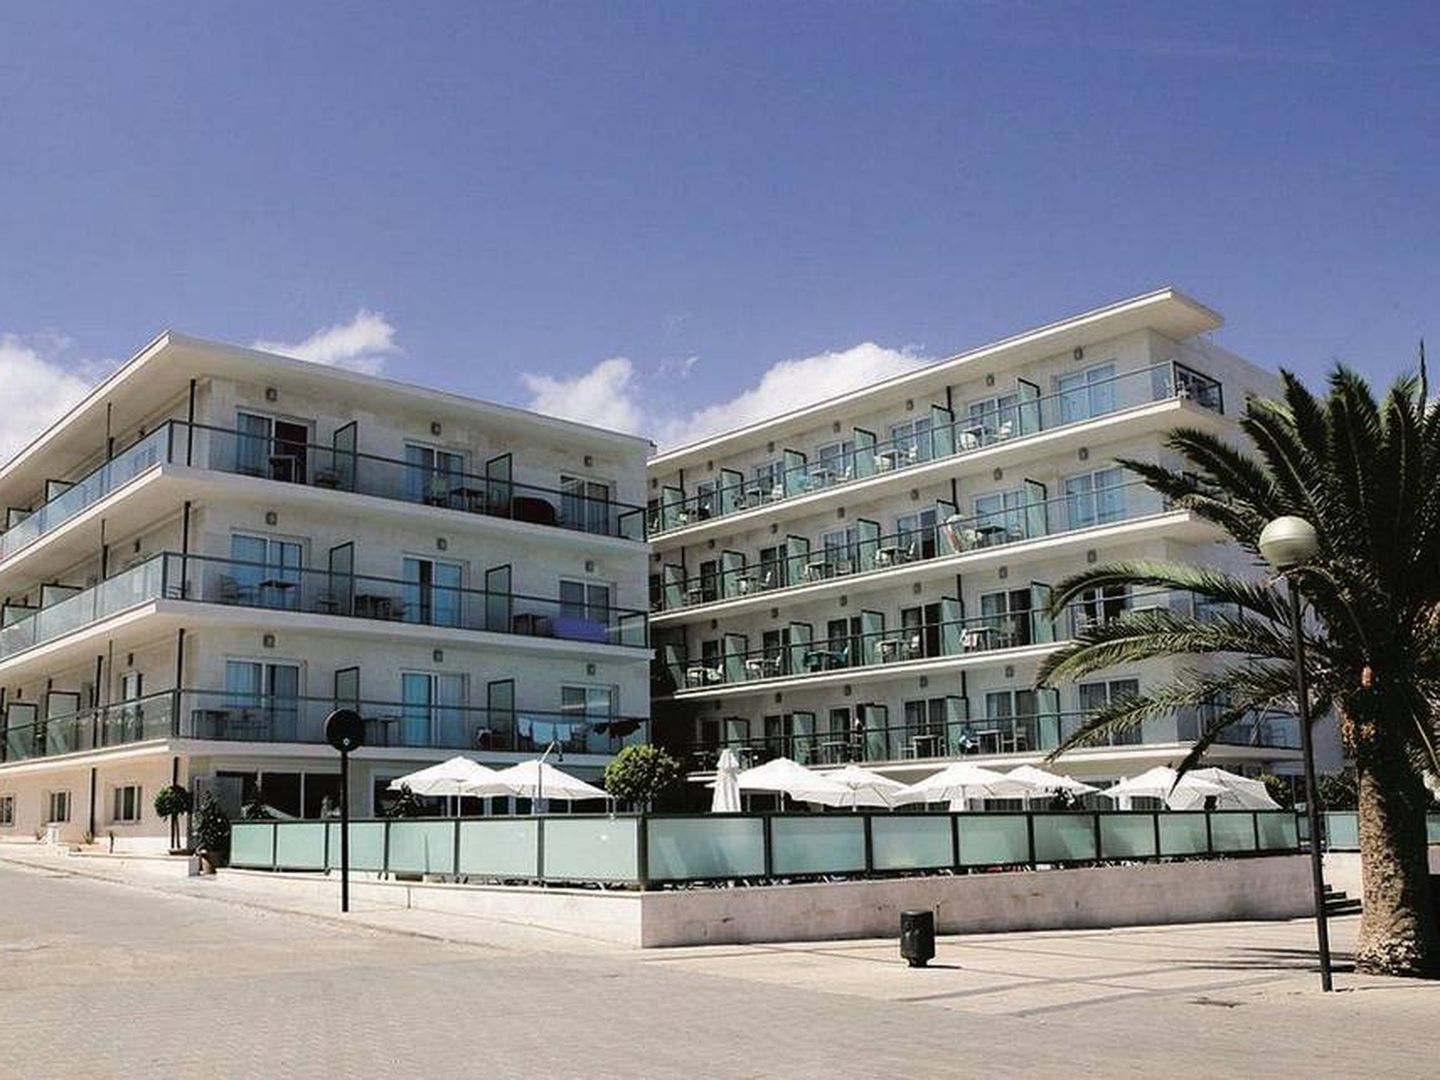 Hotel Sea Sun Fona. (Hotels in Majorca)